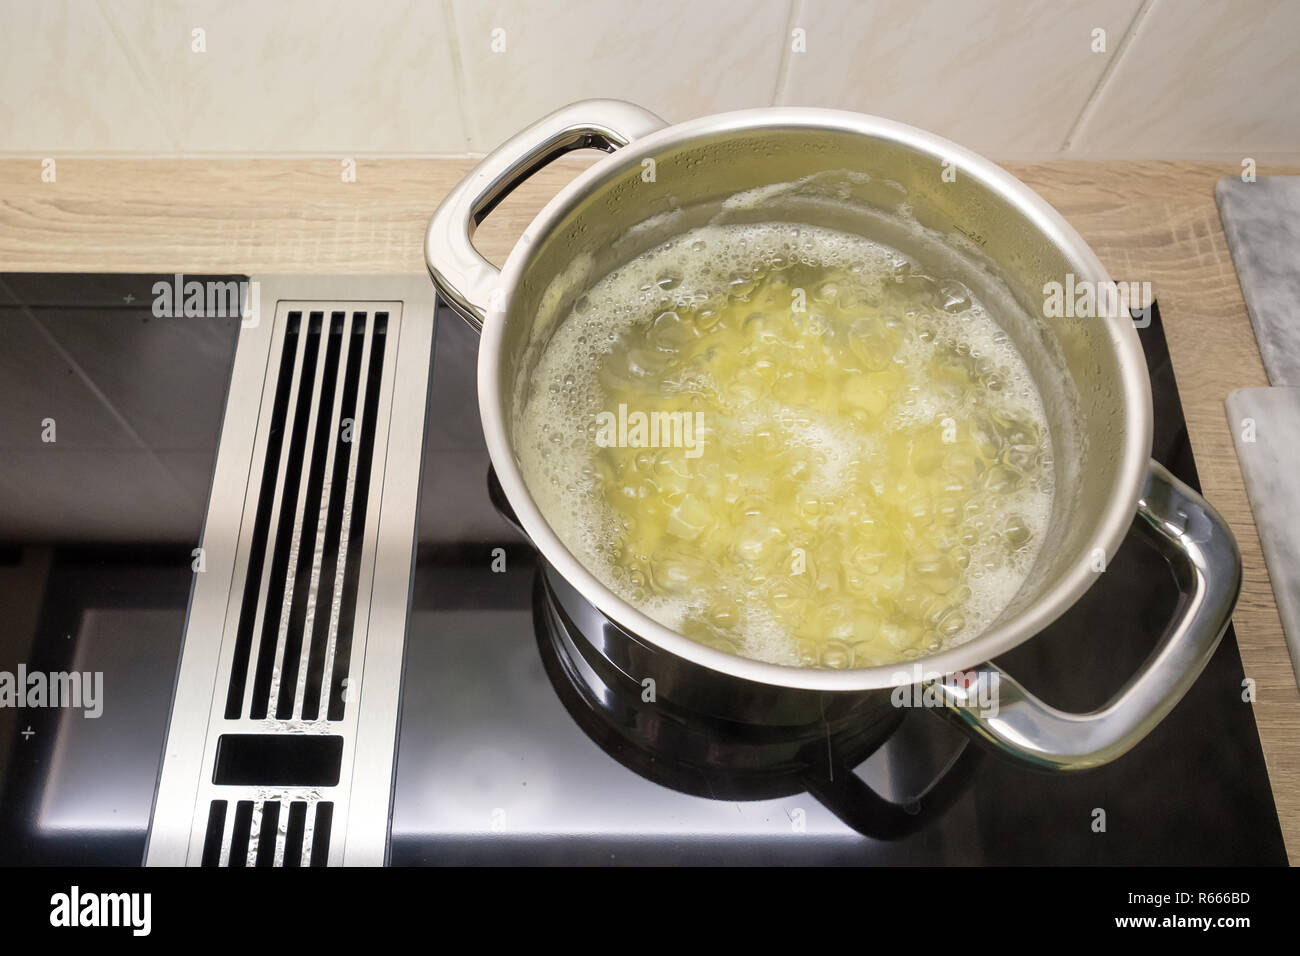 Kochen Sie die Kartoffeln in Wasser im Topf auf Herd Stockfotografie - Alamy